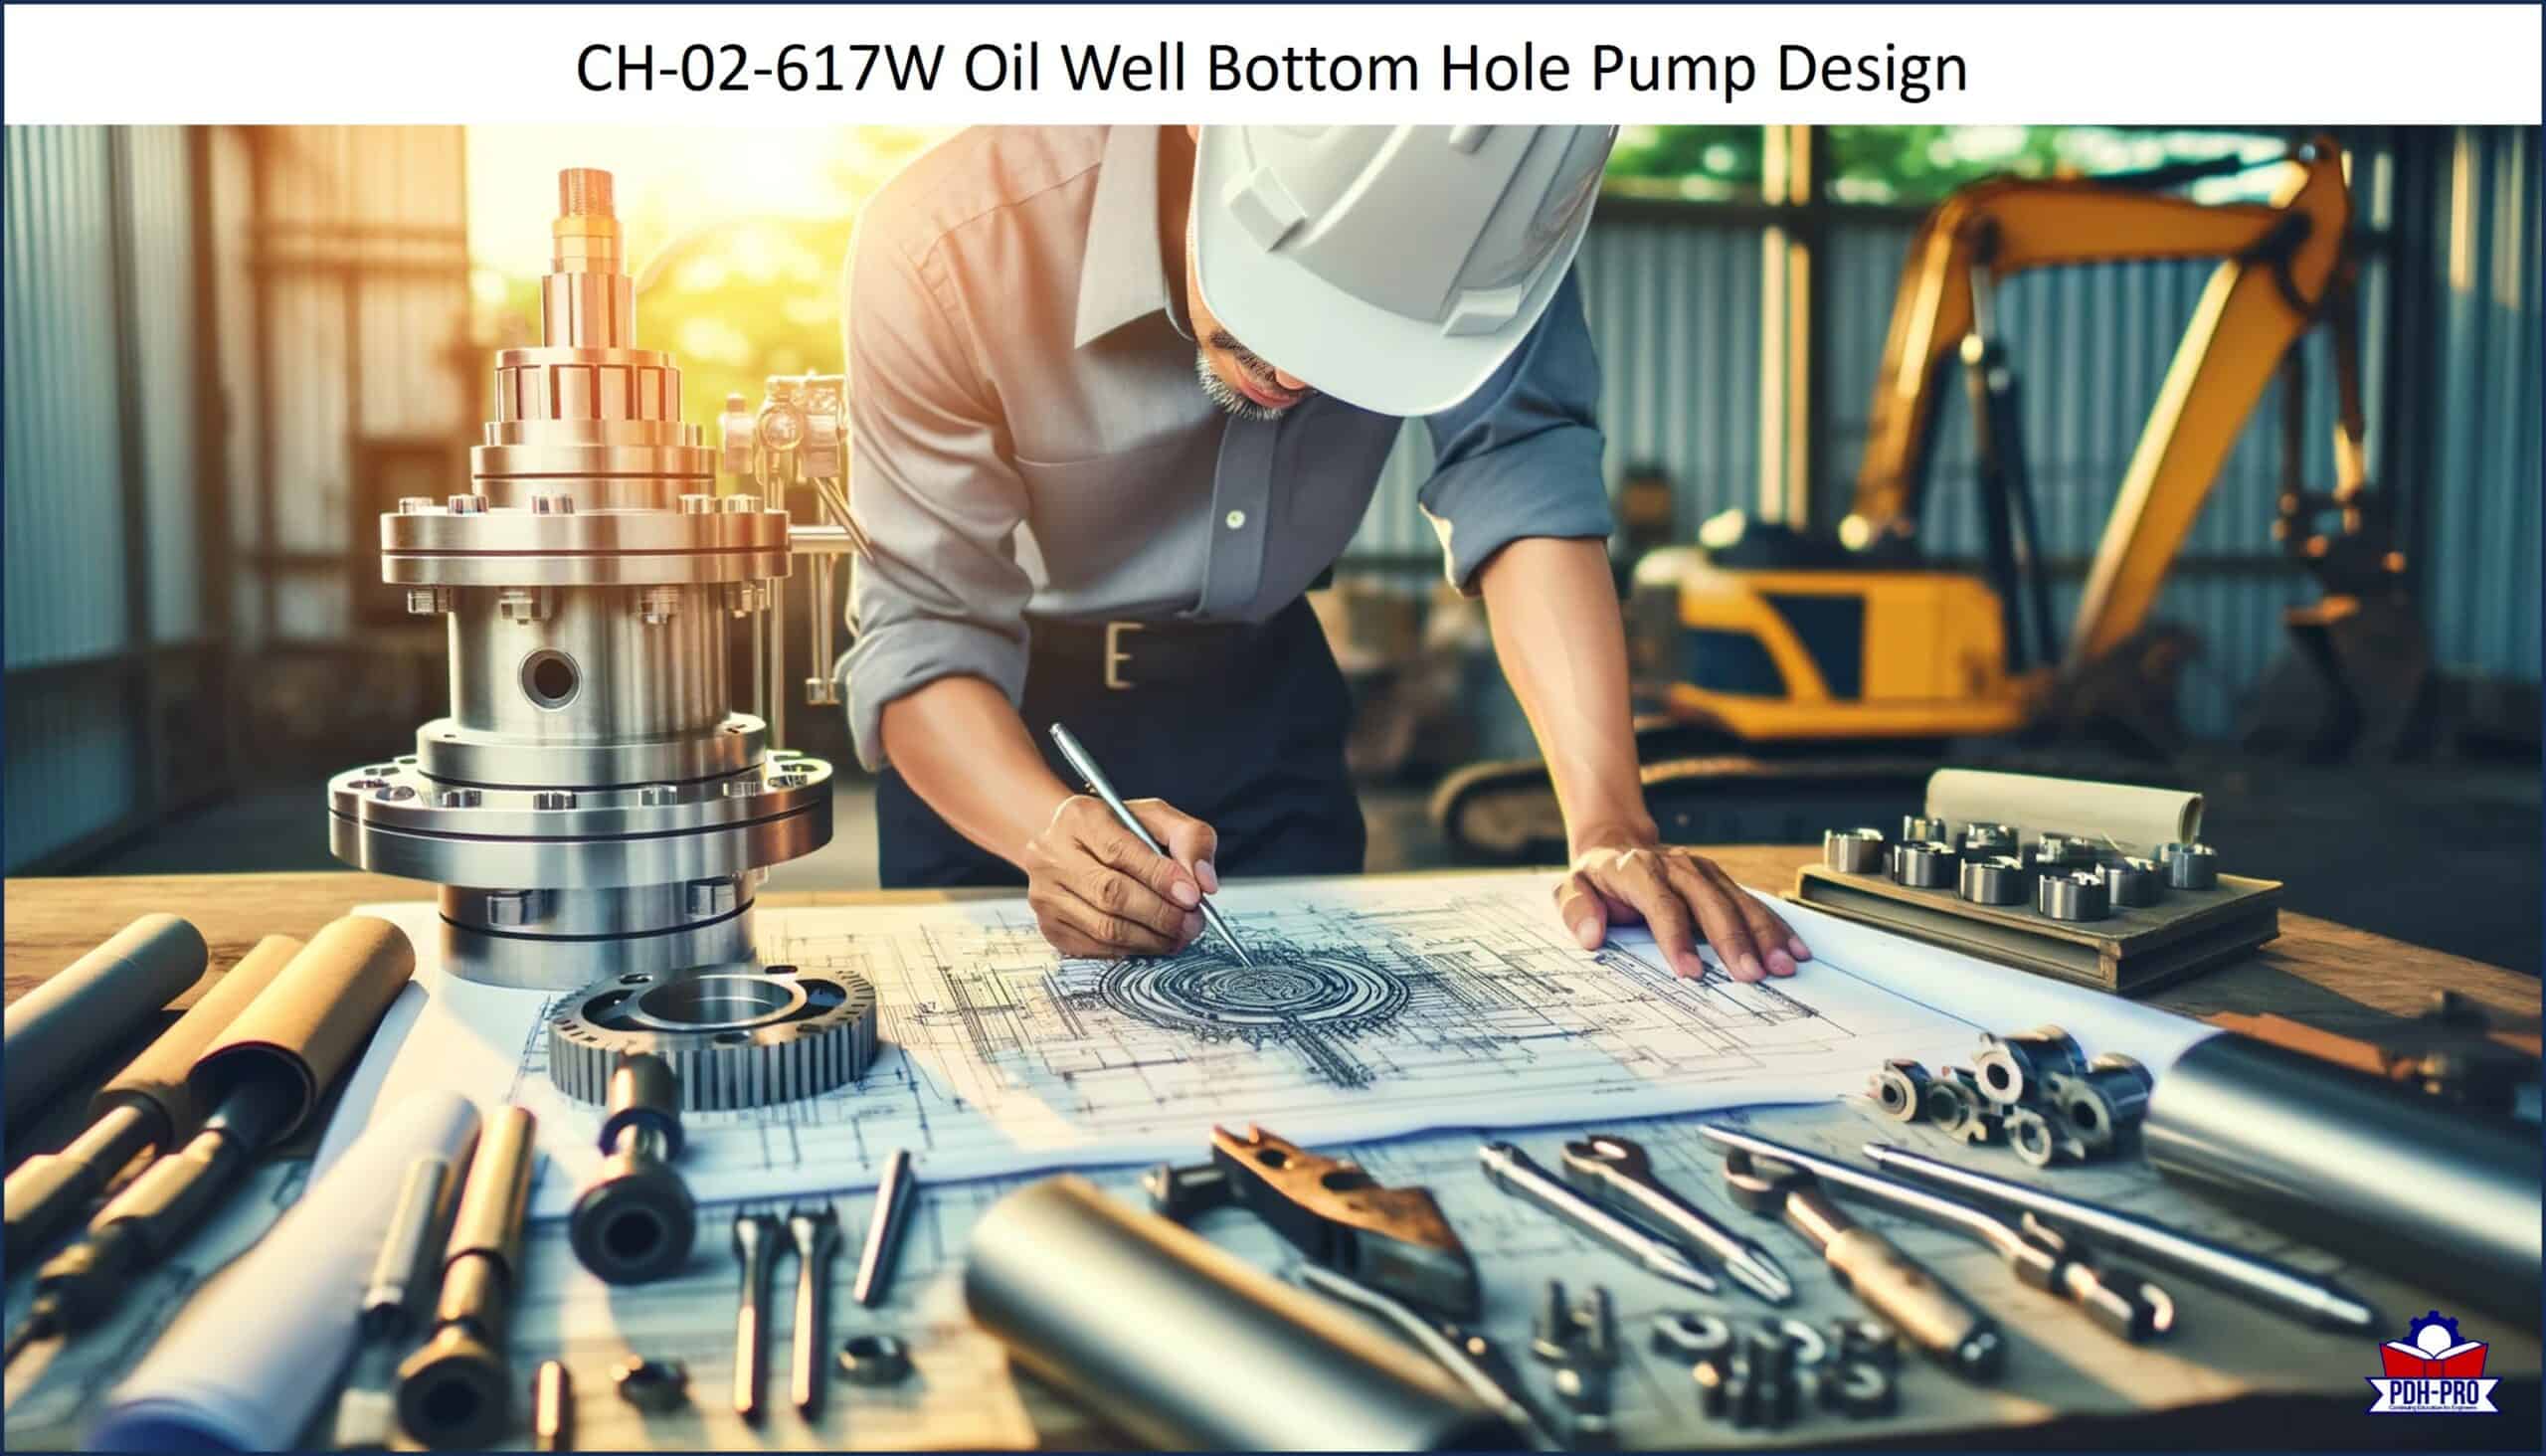 Oil Well Bottom Hole Pump Design